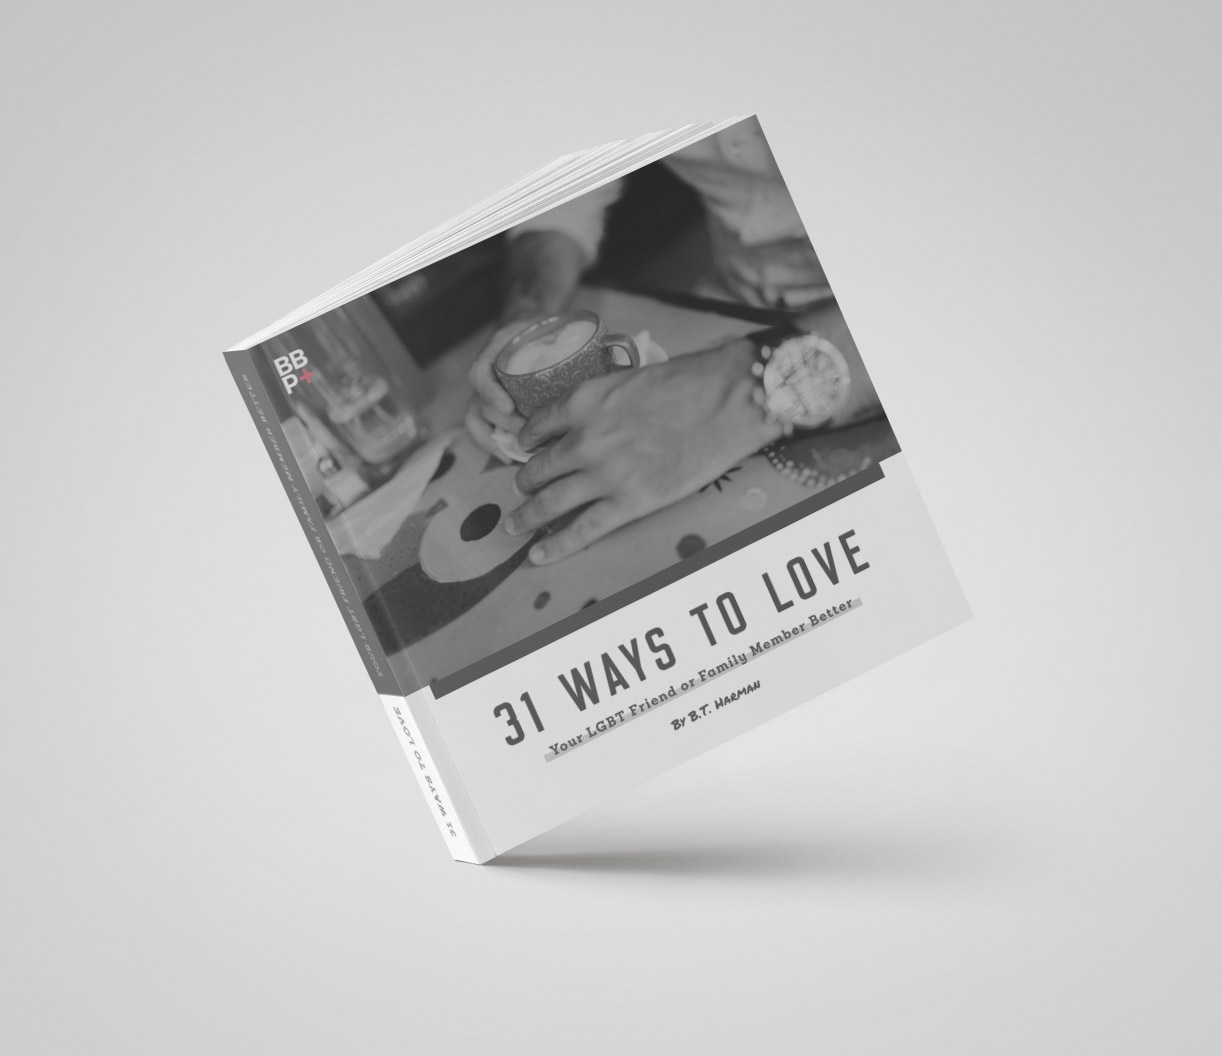 Ebook - "31 Ways to Love"